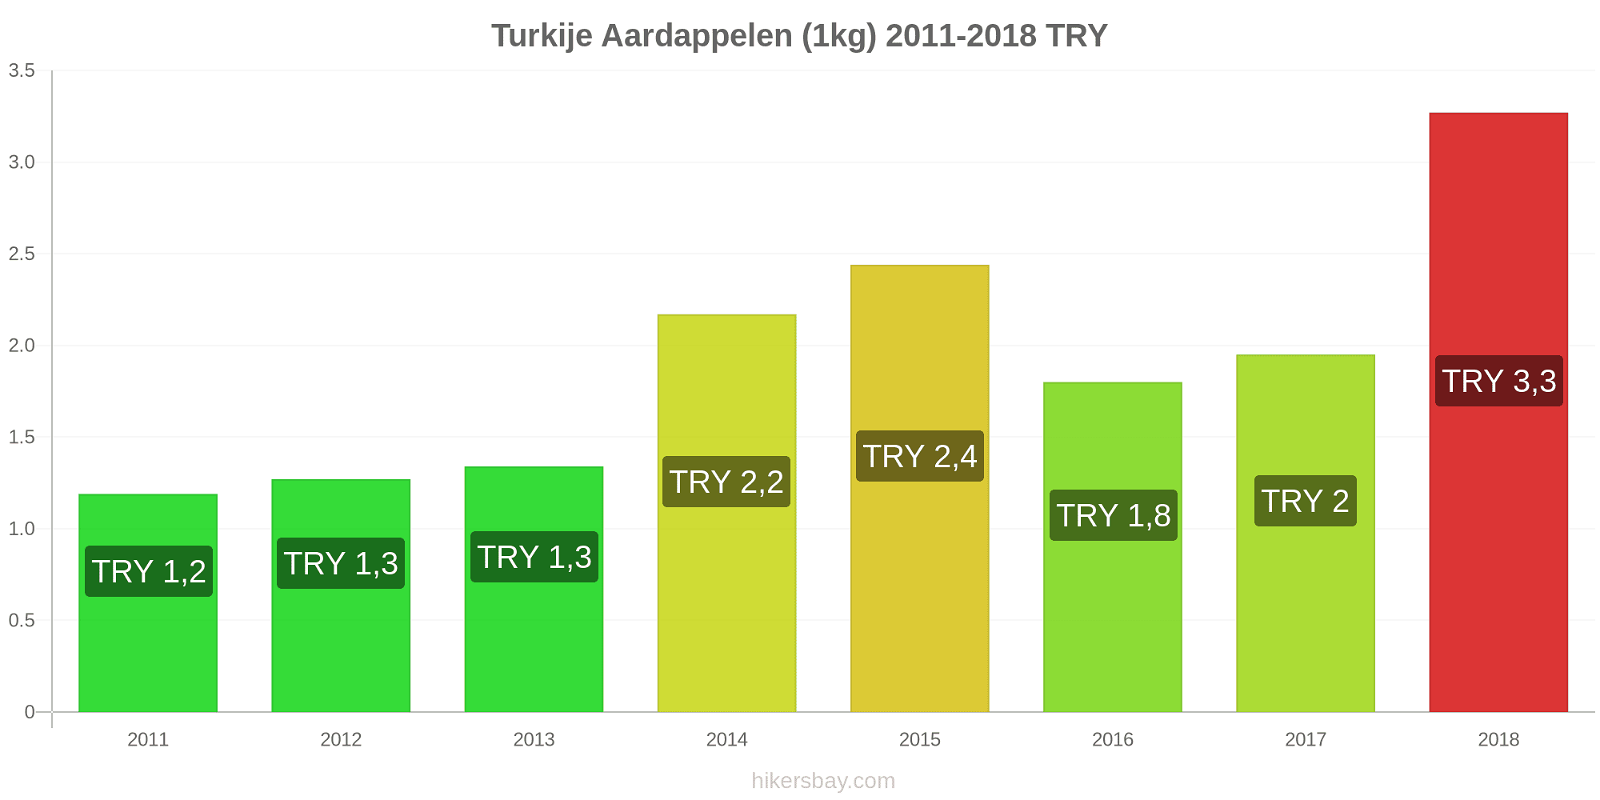 Turkije prijswijzigingen Aardappelen (1kg) hikersbay.com